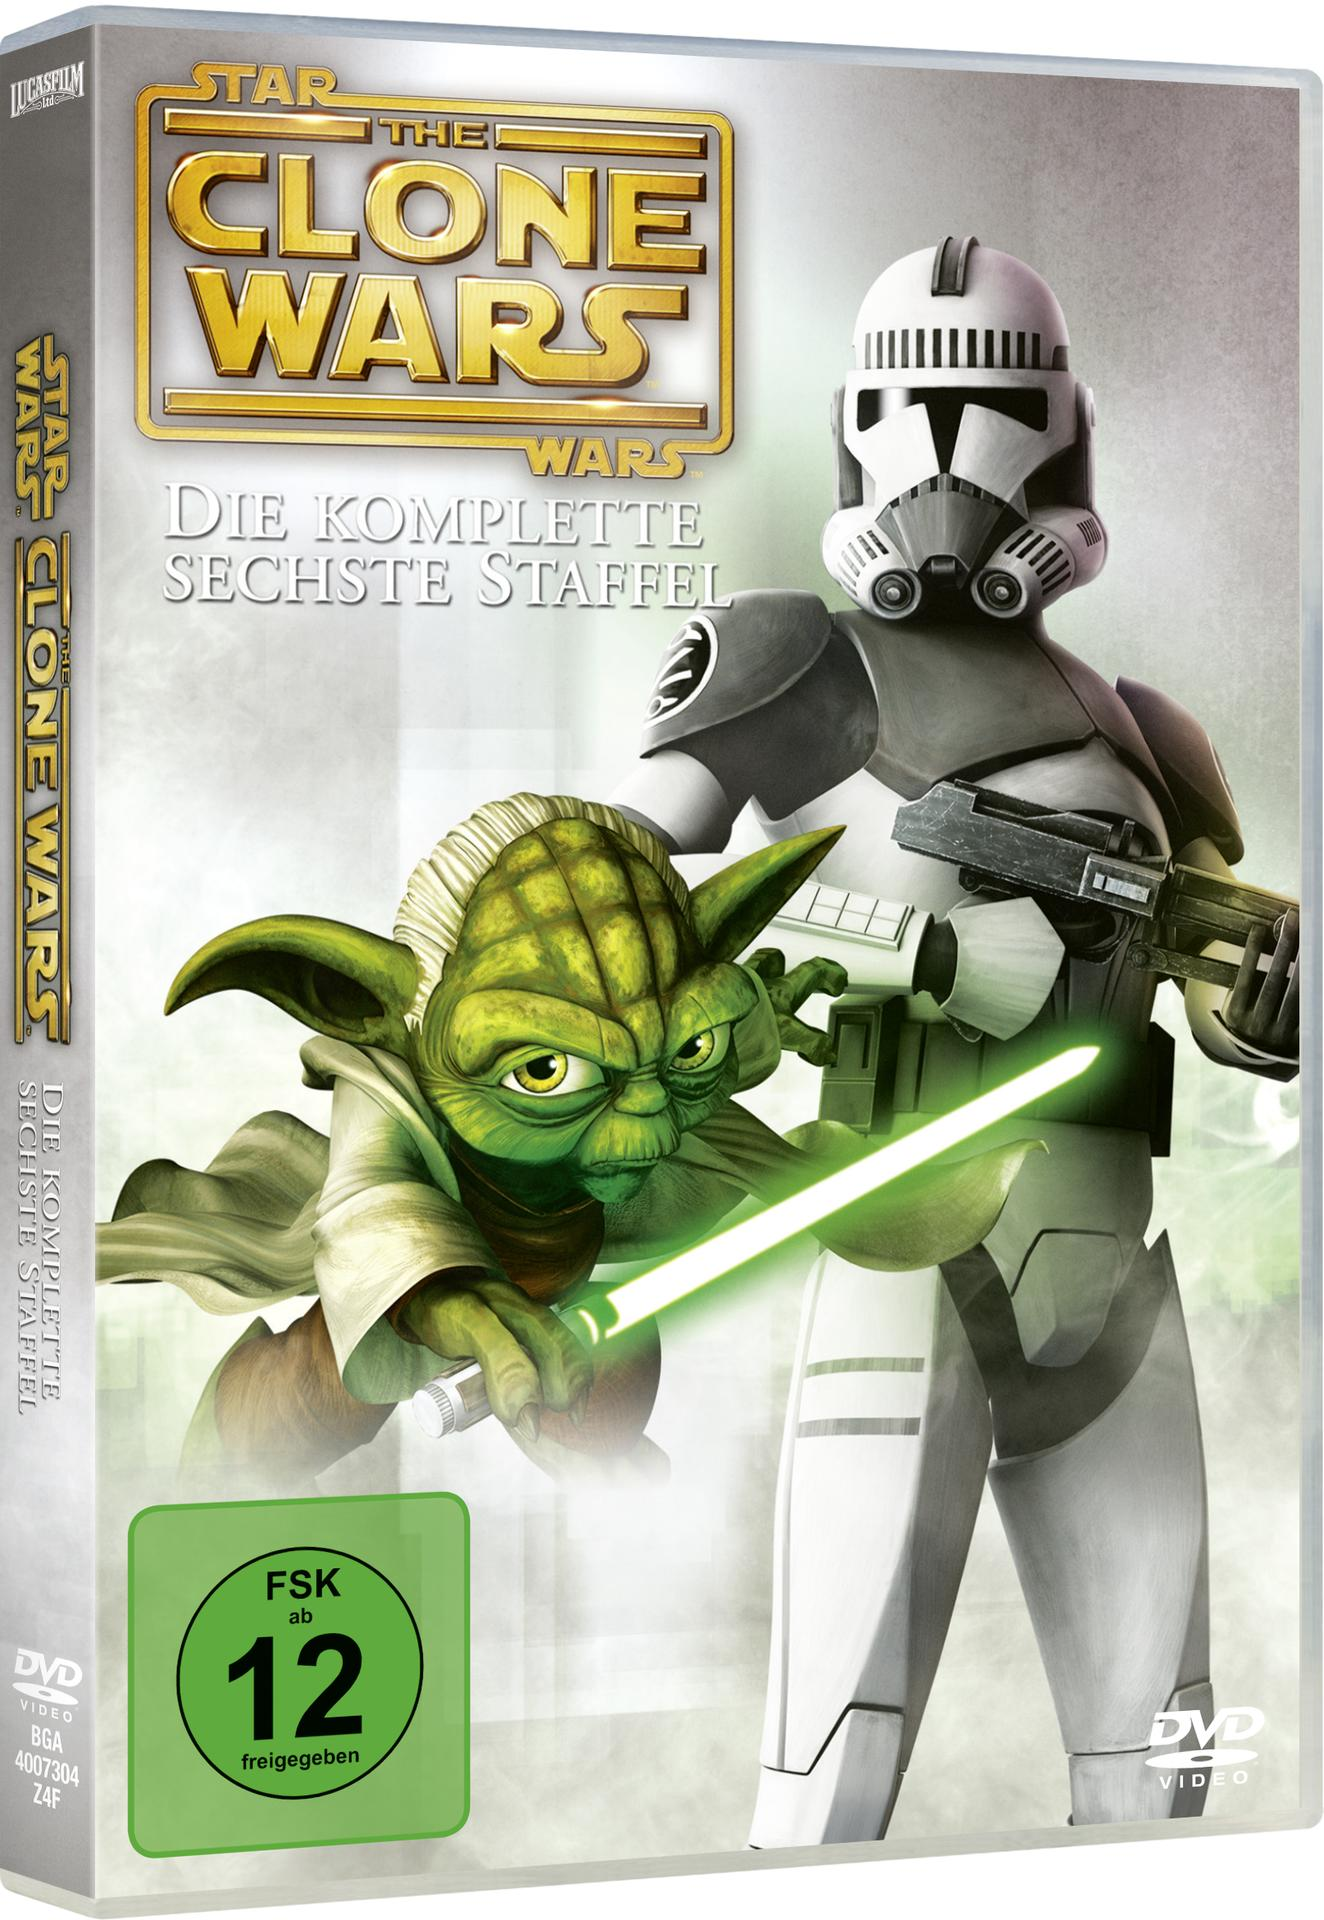 Star Wars: The Clone Wars DVD - 6 Staffel